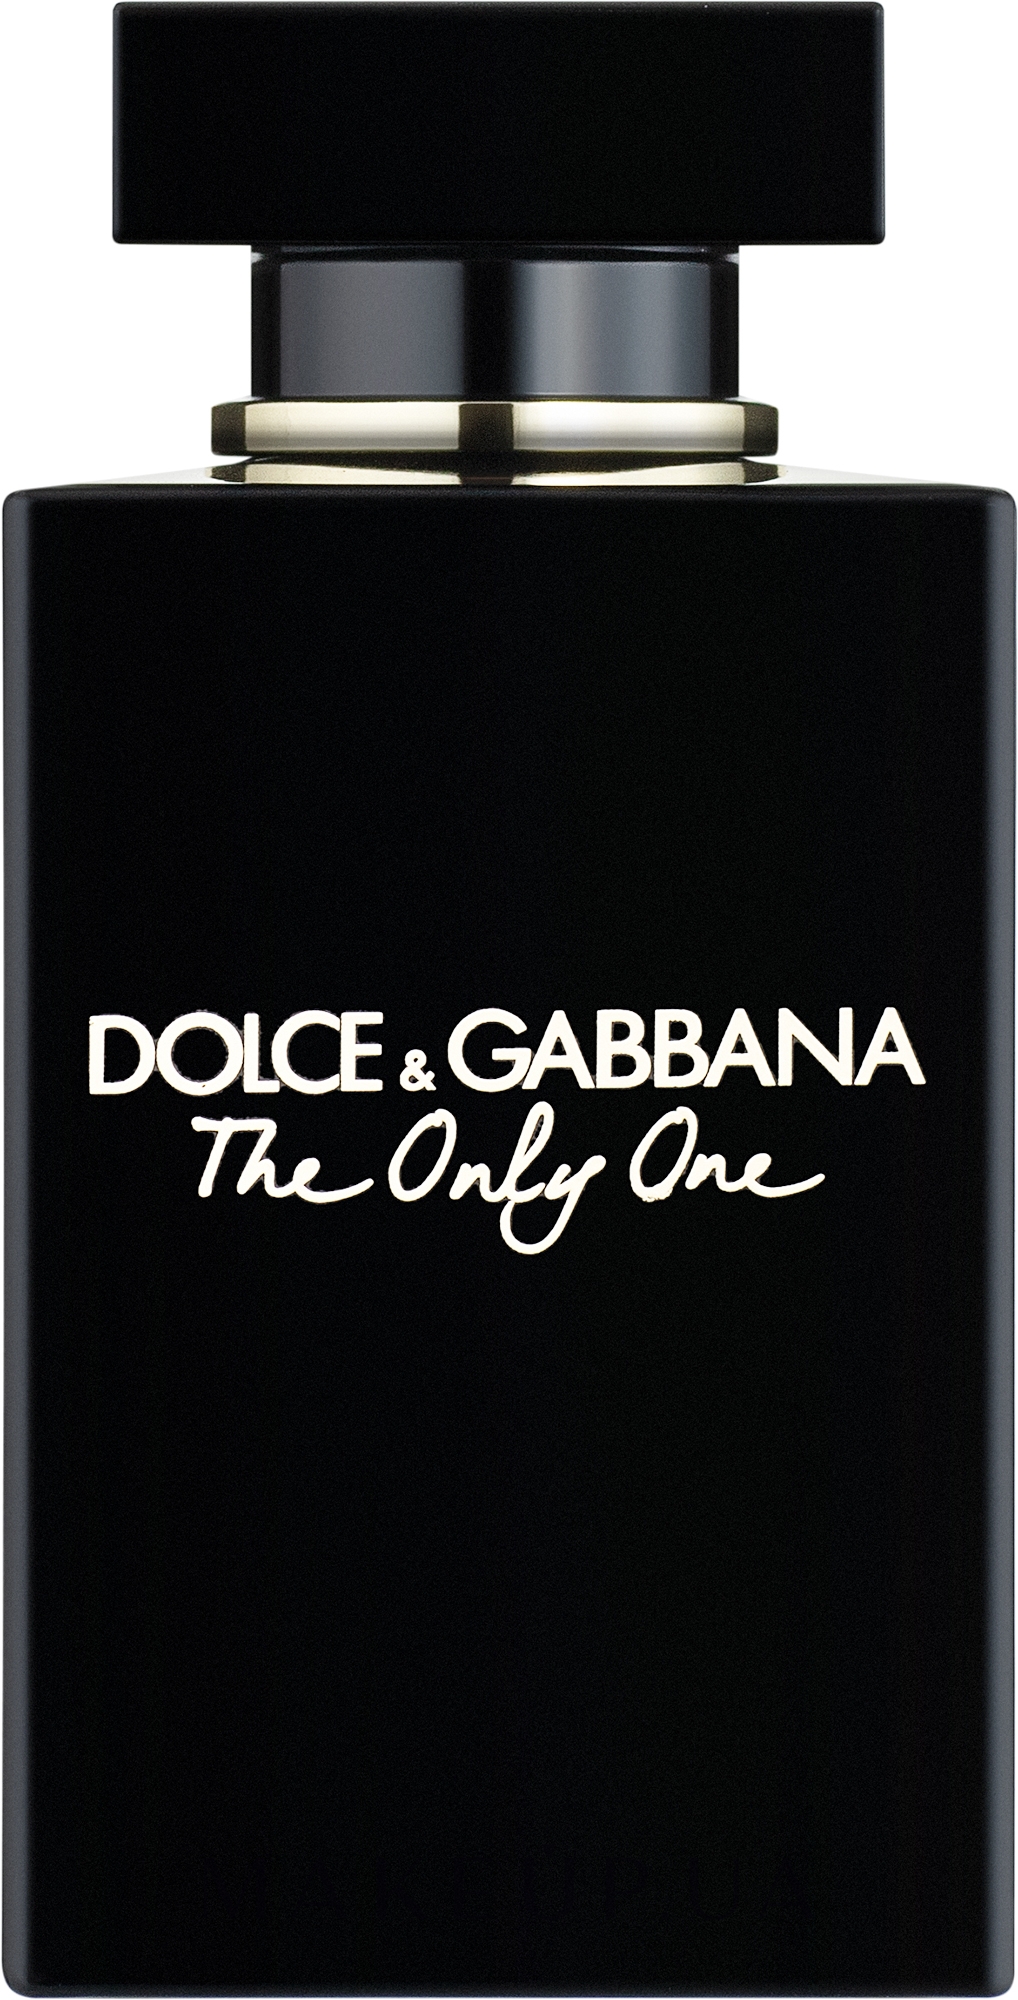 Отзывы дольче габбана зе. Dolce & Gabbana the only one, EDP., 100 ml. Dolce Gabbana the only one 30 мл. Туалетная вода Дольче Габбана the only one. Dolce Gabbana the only one Eau de Parfum.